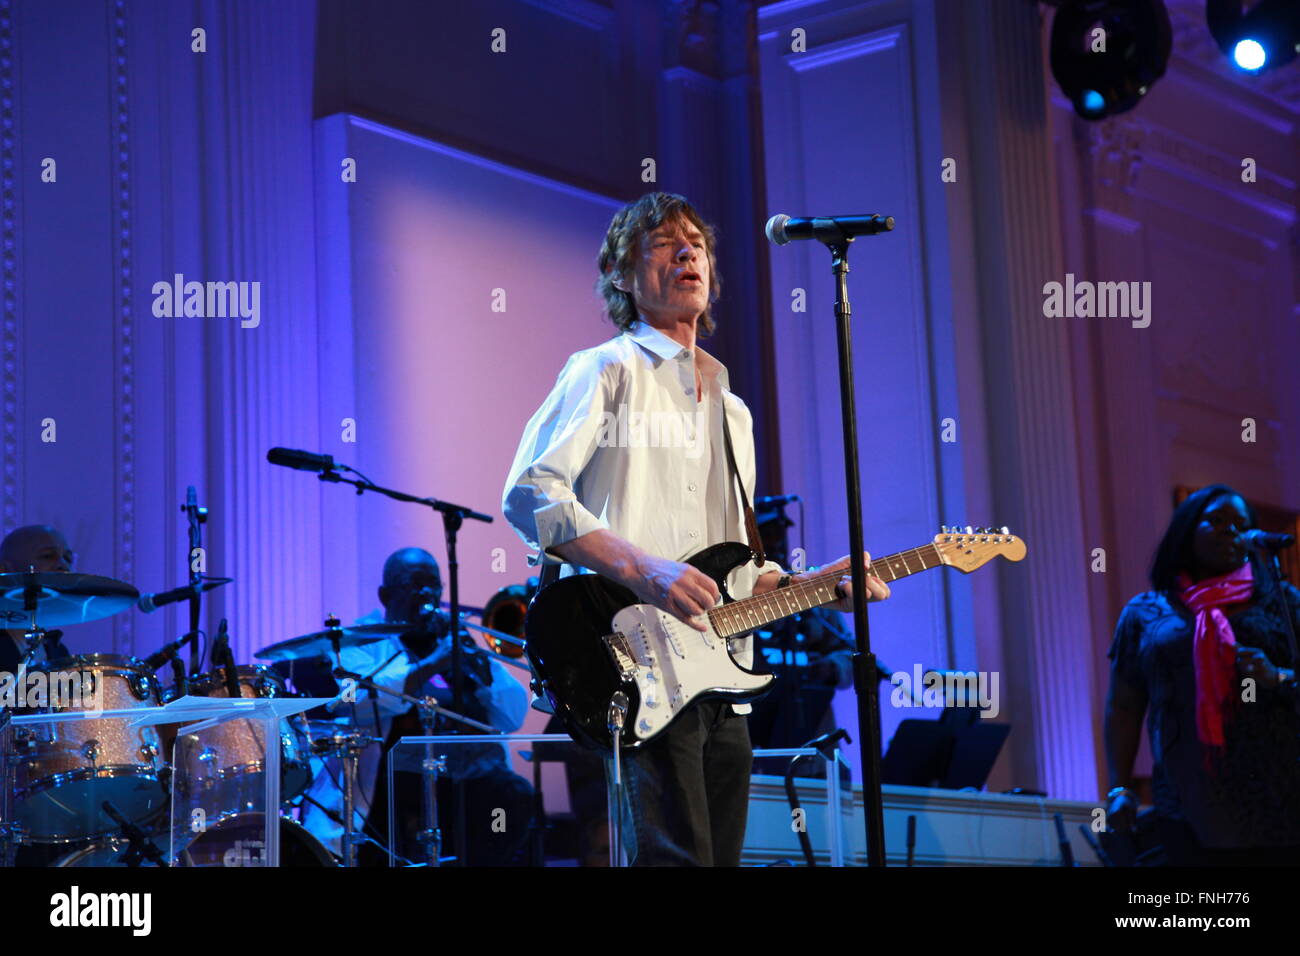 Mick Jagger en répétition pour son apparition au en performance à la maison blanche : Red, White and Blues concert dans l'East Room de la Maison Blanche le 20 février 2012 à Washington, DC. Banque D'Images